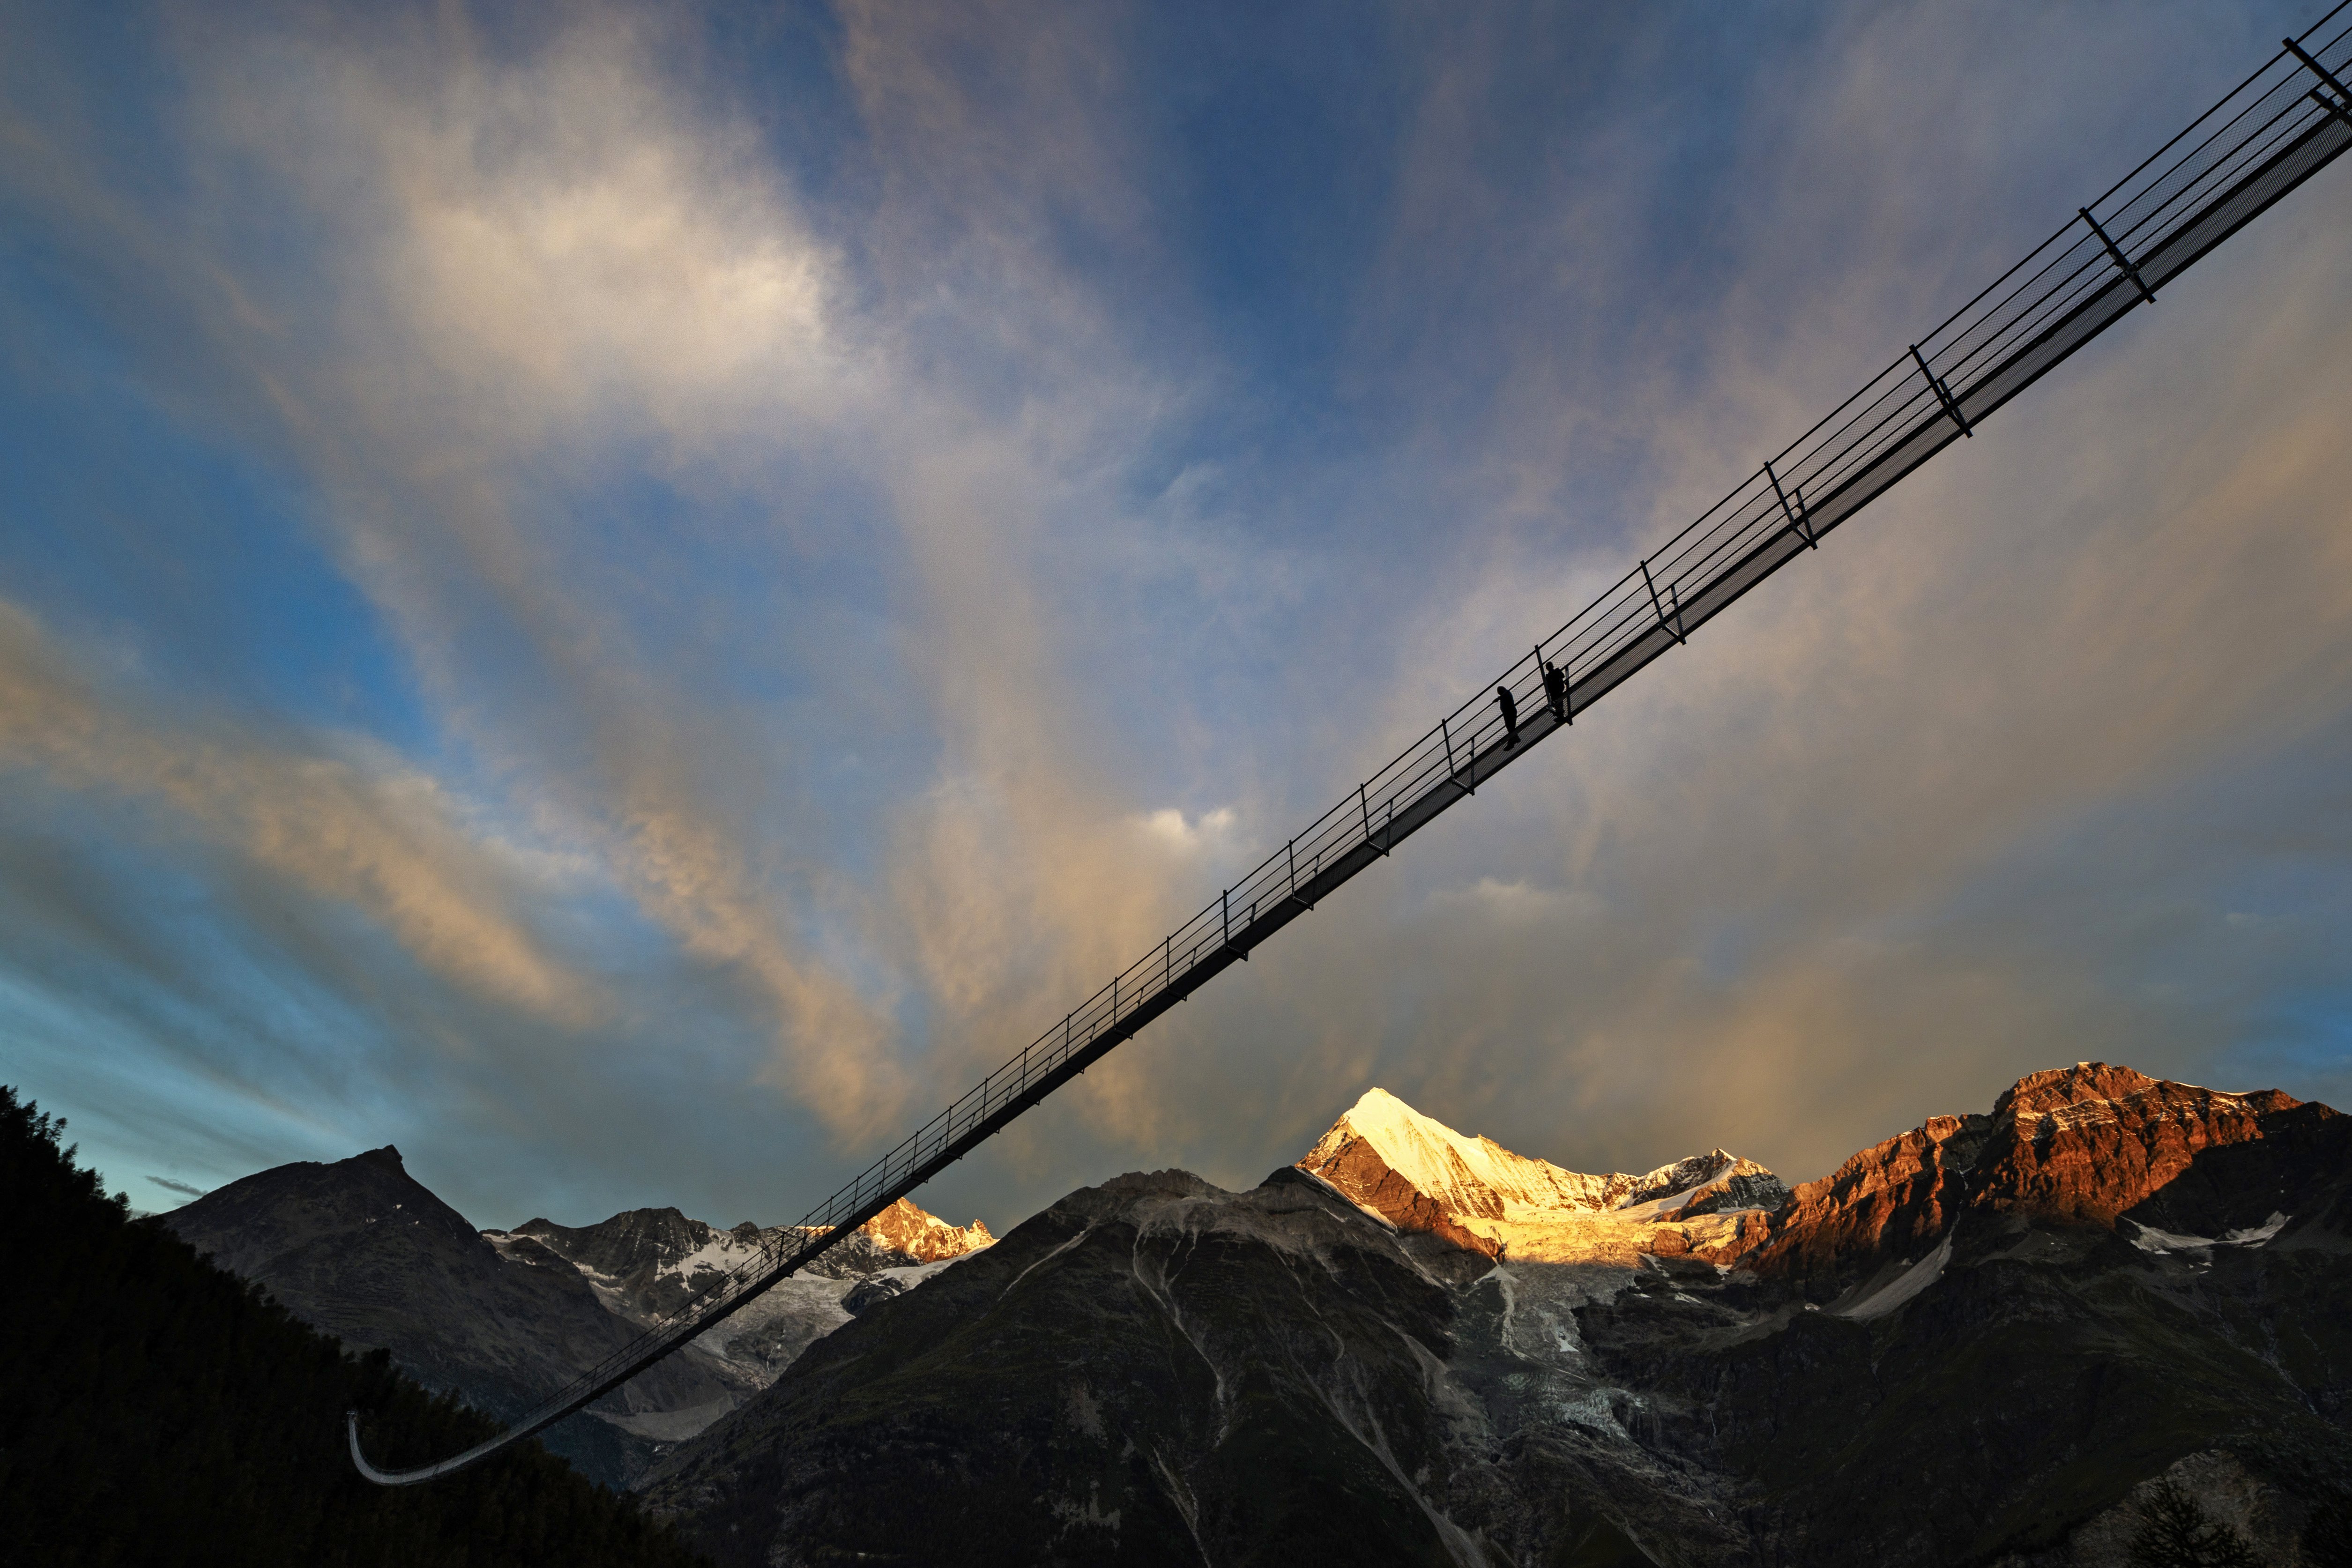 Мостът "Европа" - най-дългият висящ мост в света. Съоръжението има дължина 494м. и се намира в близост до швейцарското градче Зермат.